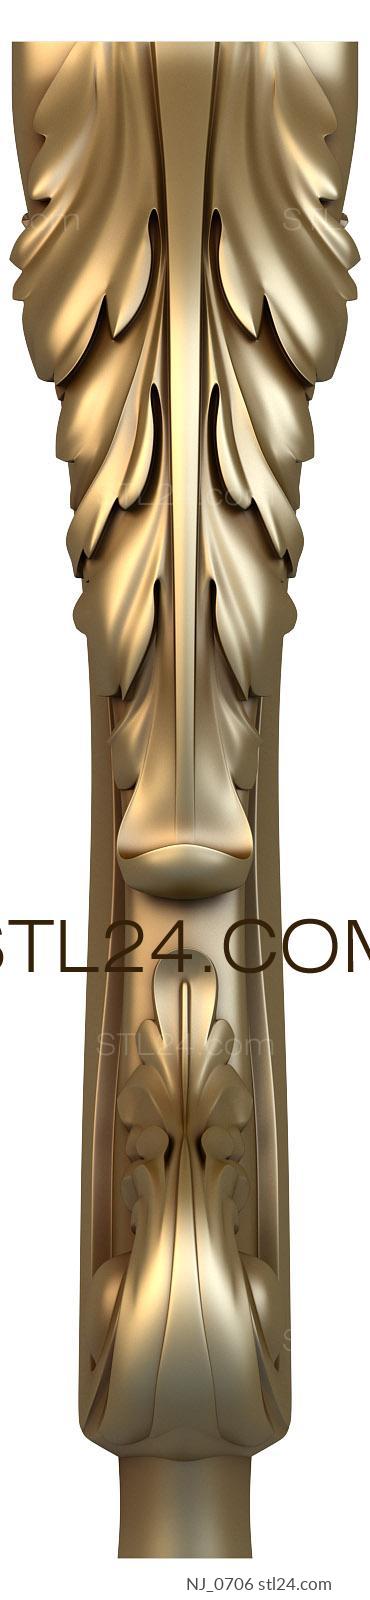 Ножки (NJ_0706) 3D модель для ЧПУ станка